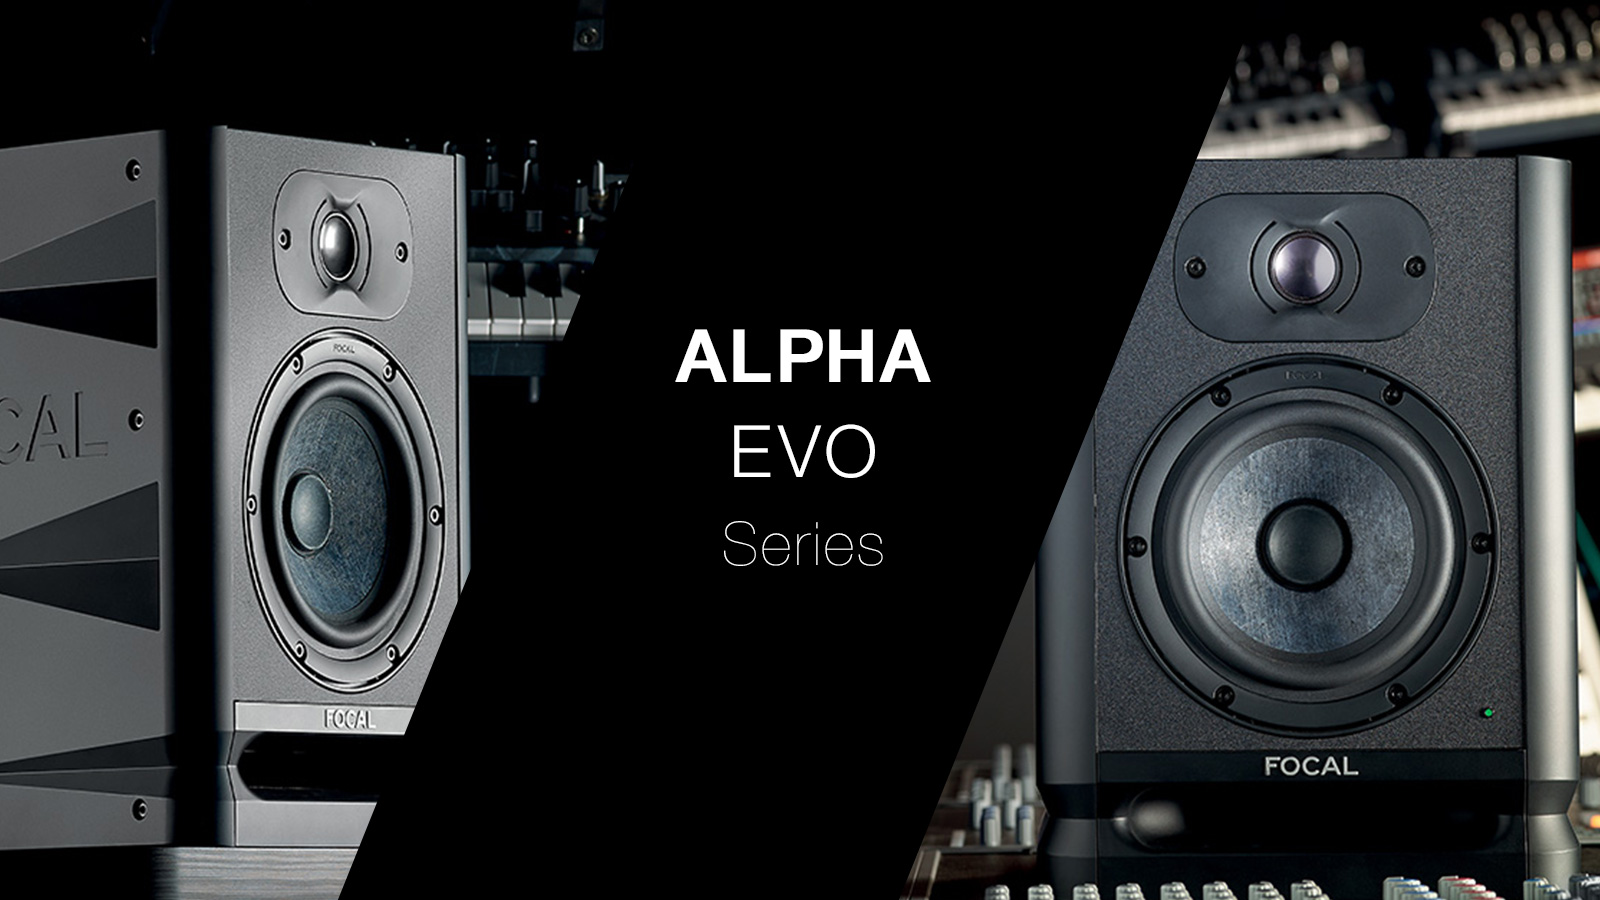 *Focal ALPHA EVOシリーズ 島村楽器アミュプラザ博多店デジタル担当の山内です！今回はFocal ALPHA EVOシリーズ の2モデル「ALPHA EVO 50」「ALPHA EVO 65」をご紹介します！ ALPHA EVOシリーズは、様々な環境でのミキシングに対応できるよう設計され […]